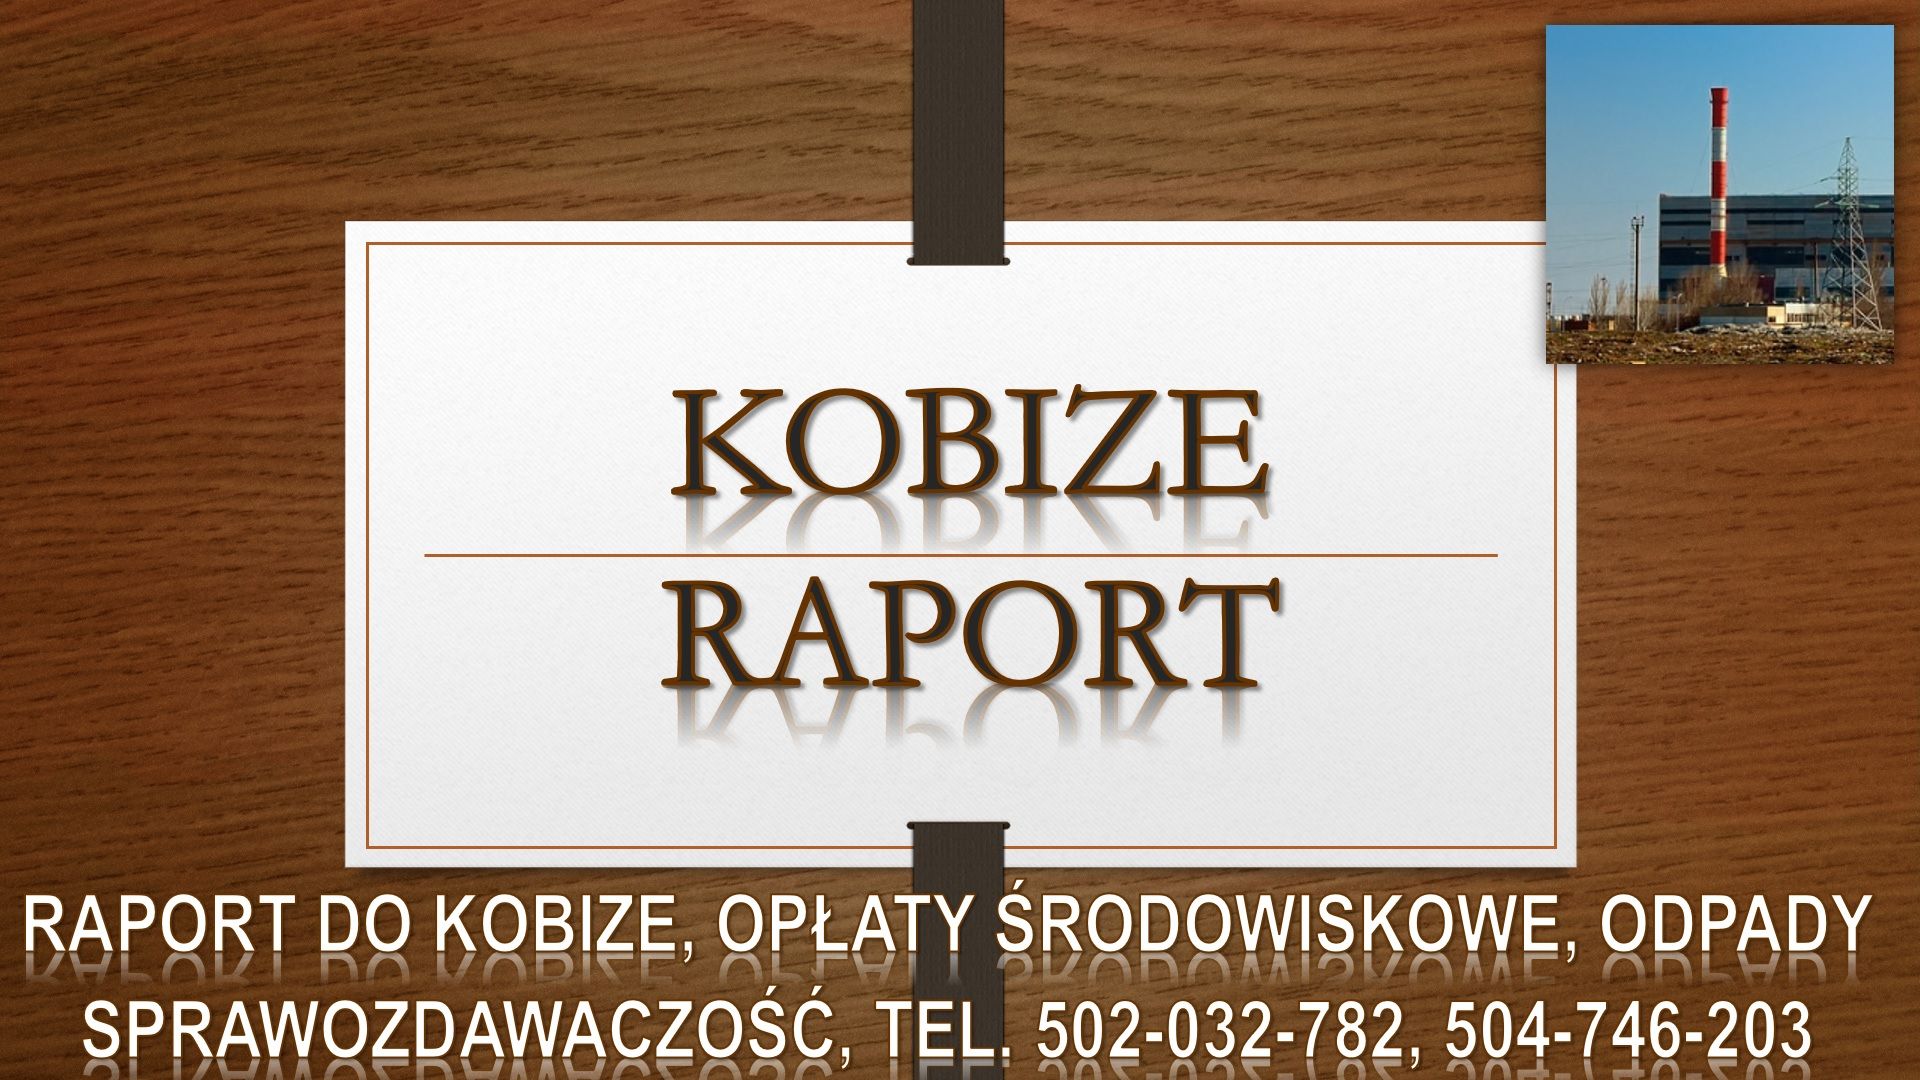 Ile kosztuje raport do kobize? Tel. 502-032-782, Sprawozdanie do bazy KOBiZE Inowrocław - Zdjęcie 1